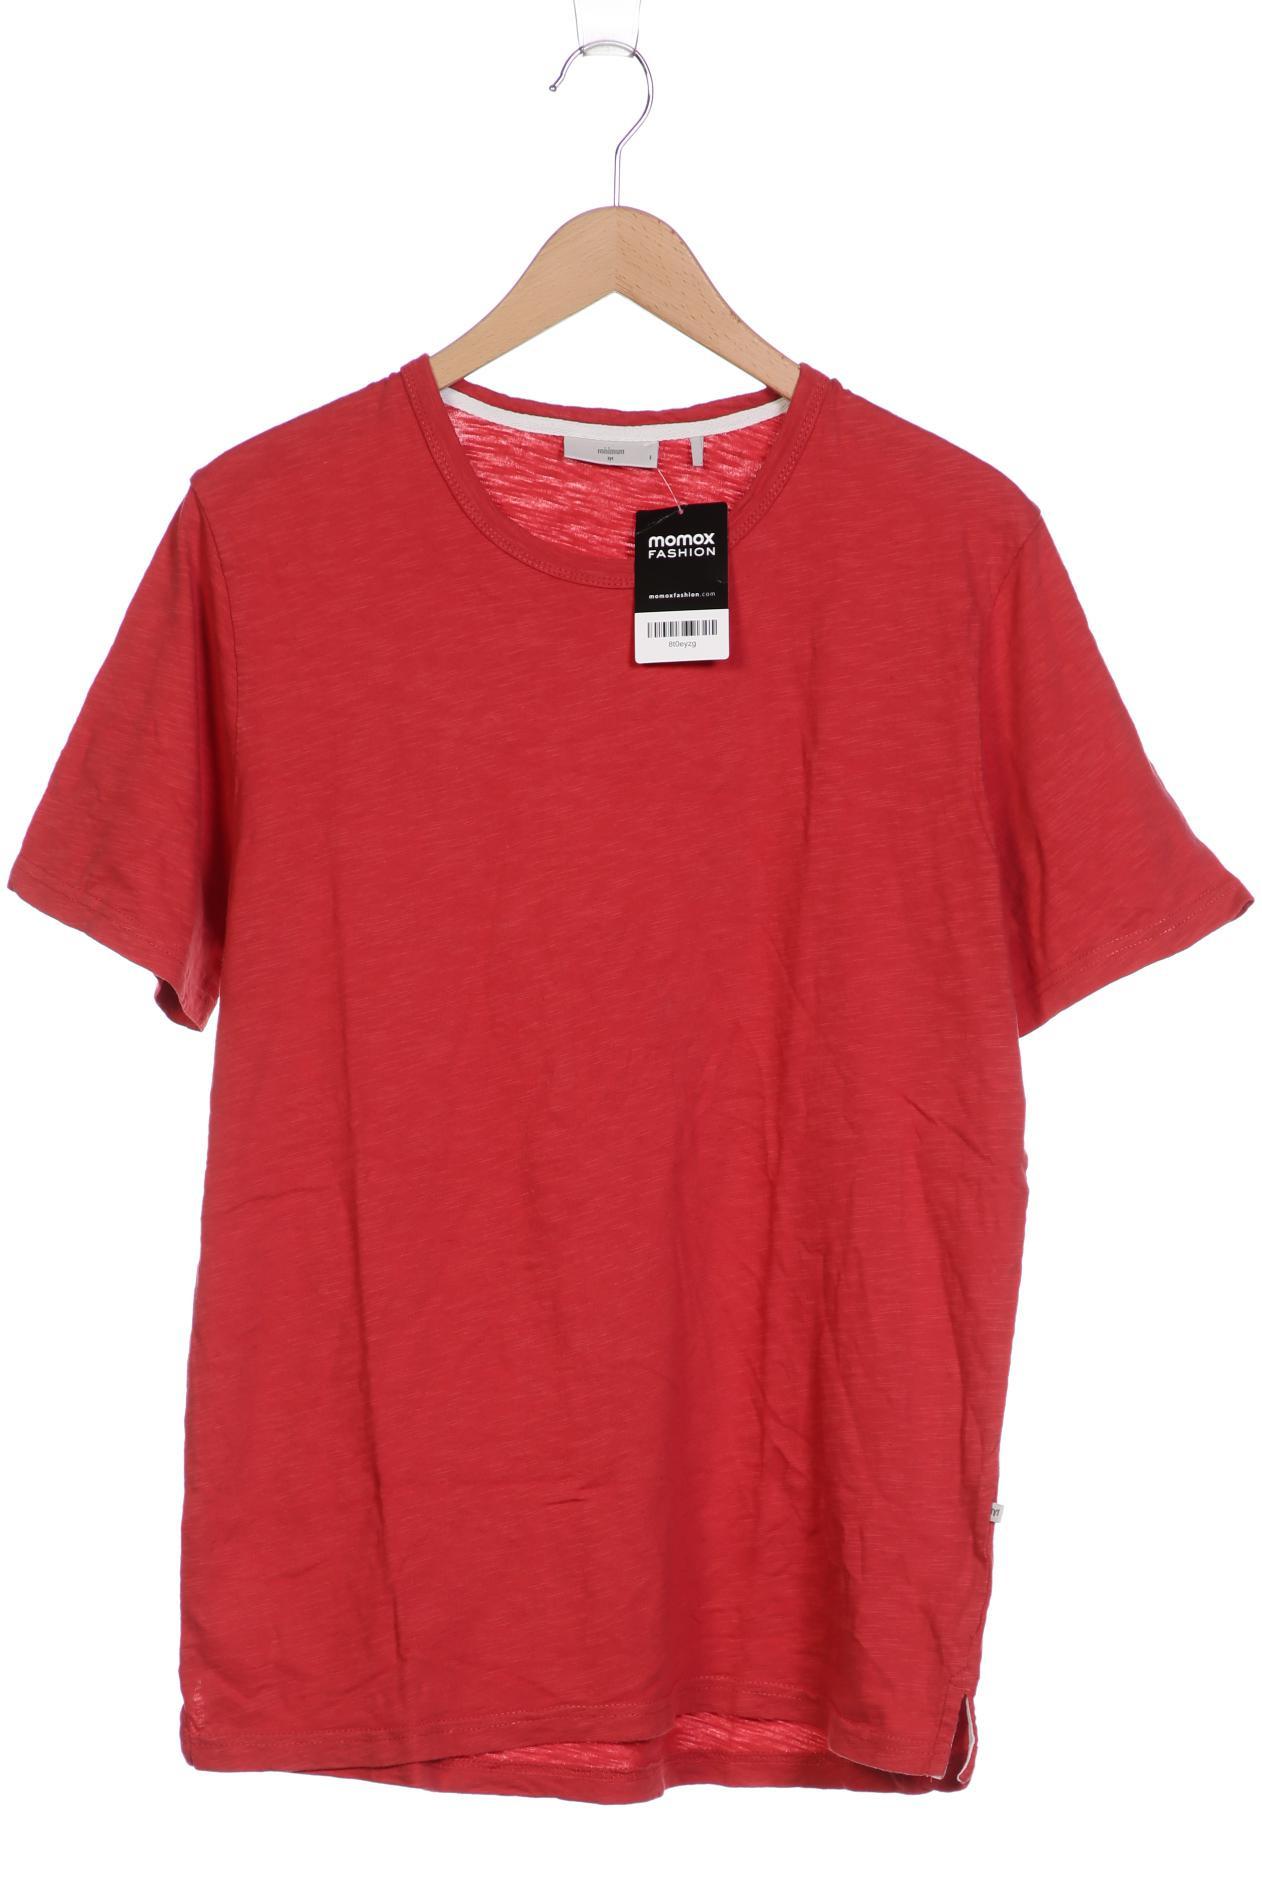 Minimum Herren T-Shirt, rot, Gr. 48 von Minimum